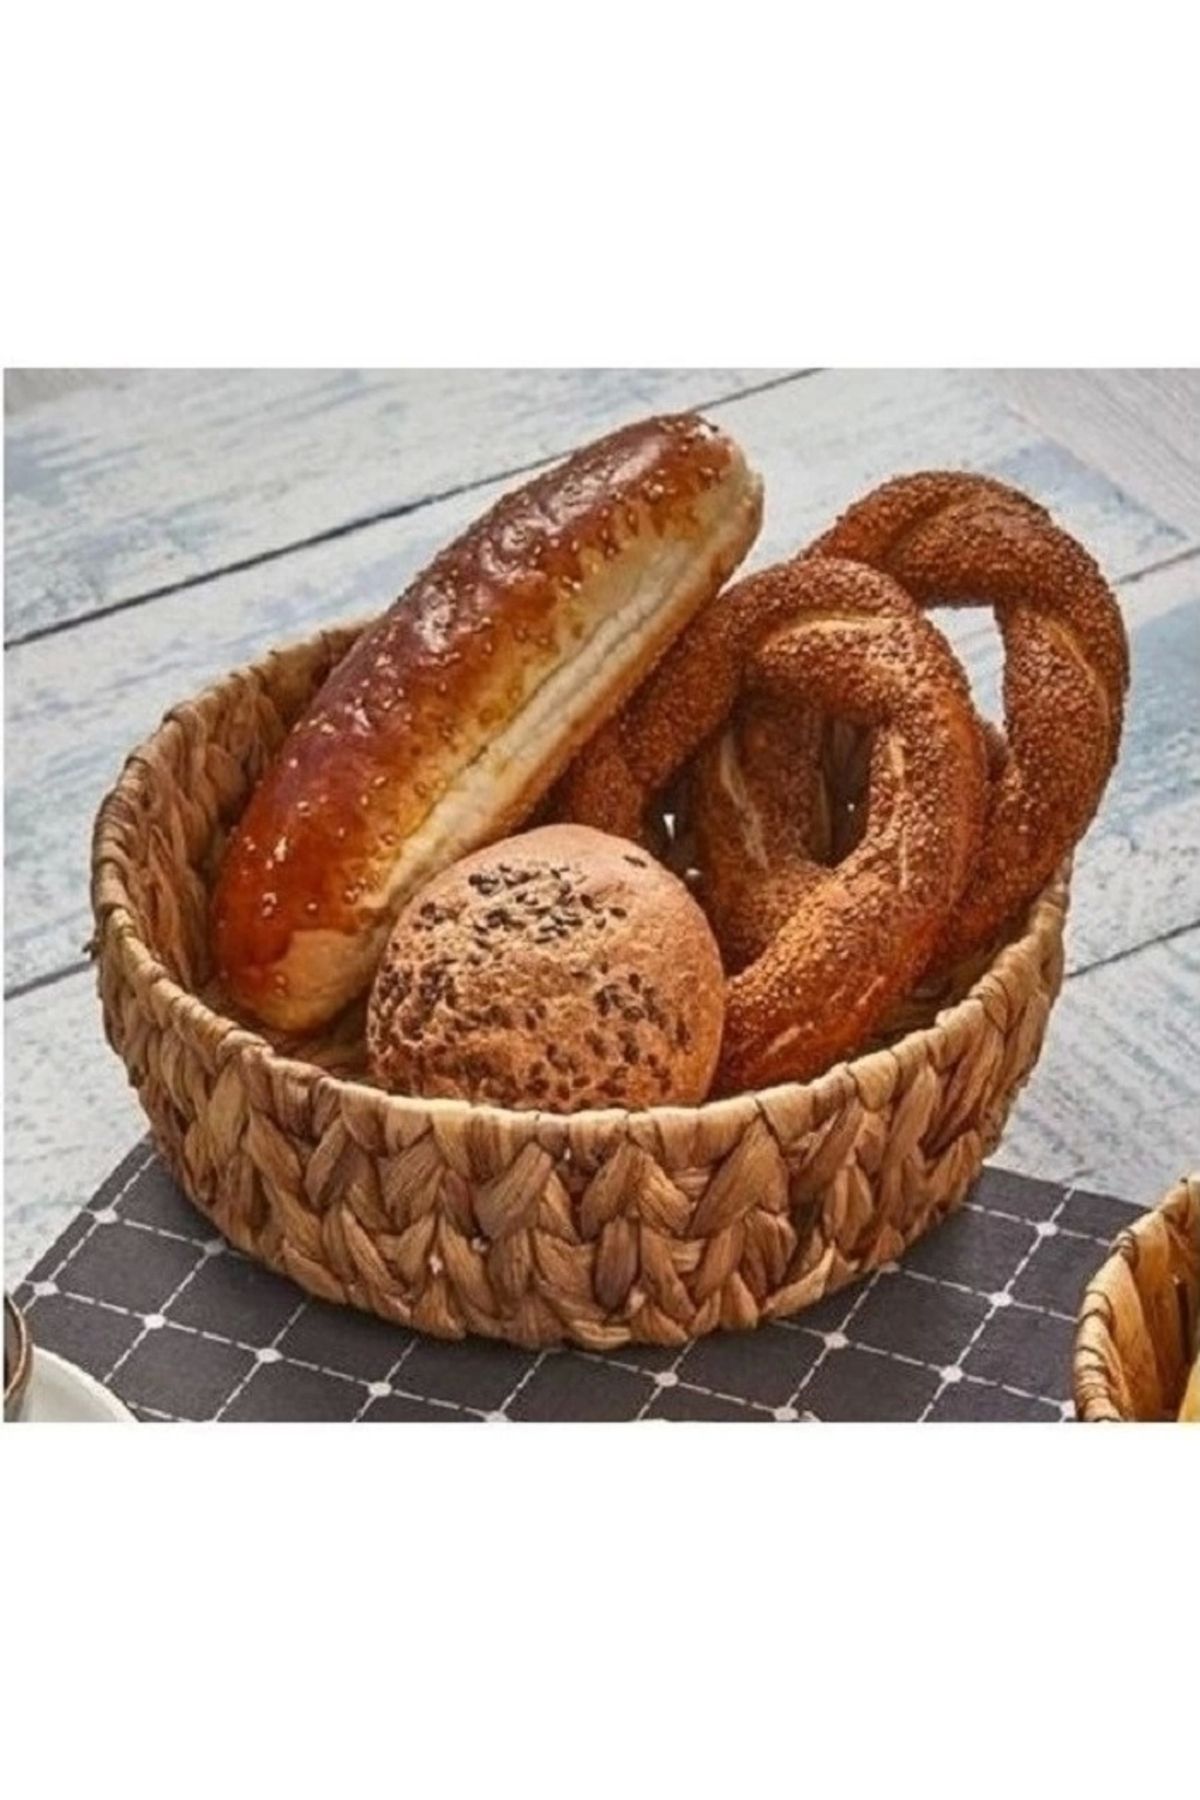 Evistro Yuvarlak Bombeli Hasır Ekmek ve Meyve Sepeti Düzenleyici 30x10cm